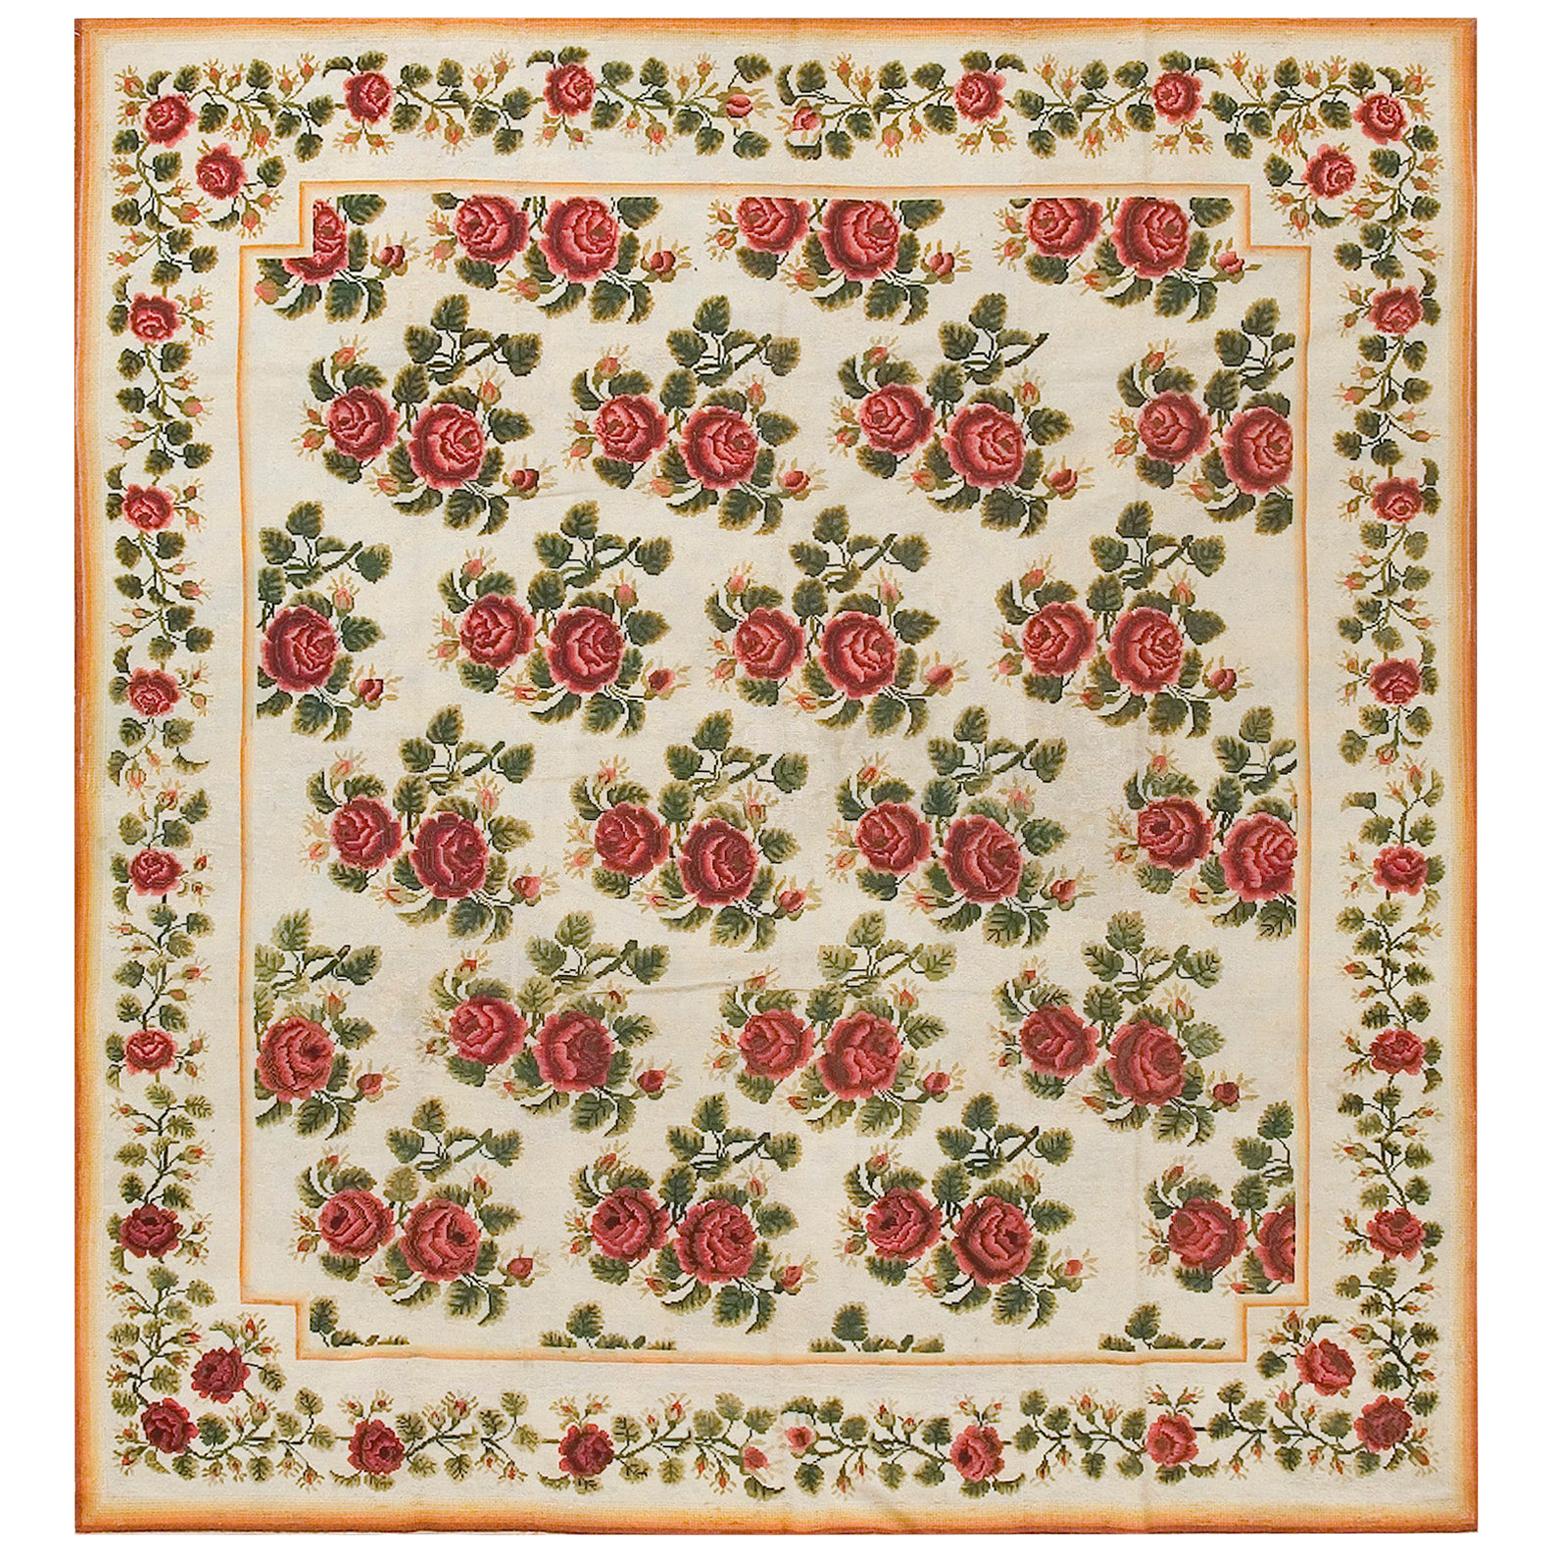 Englischer Nadelspitze-Teppich aus dem 19. Jahrhundert ( 6'10" x 7'6" - 208 x 230 )